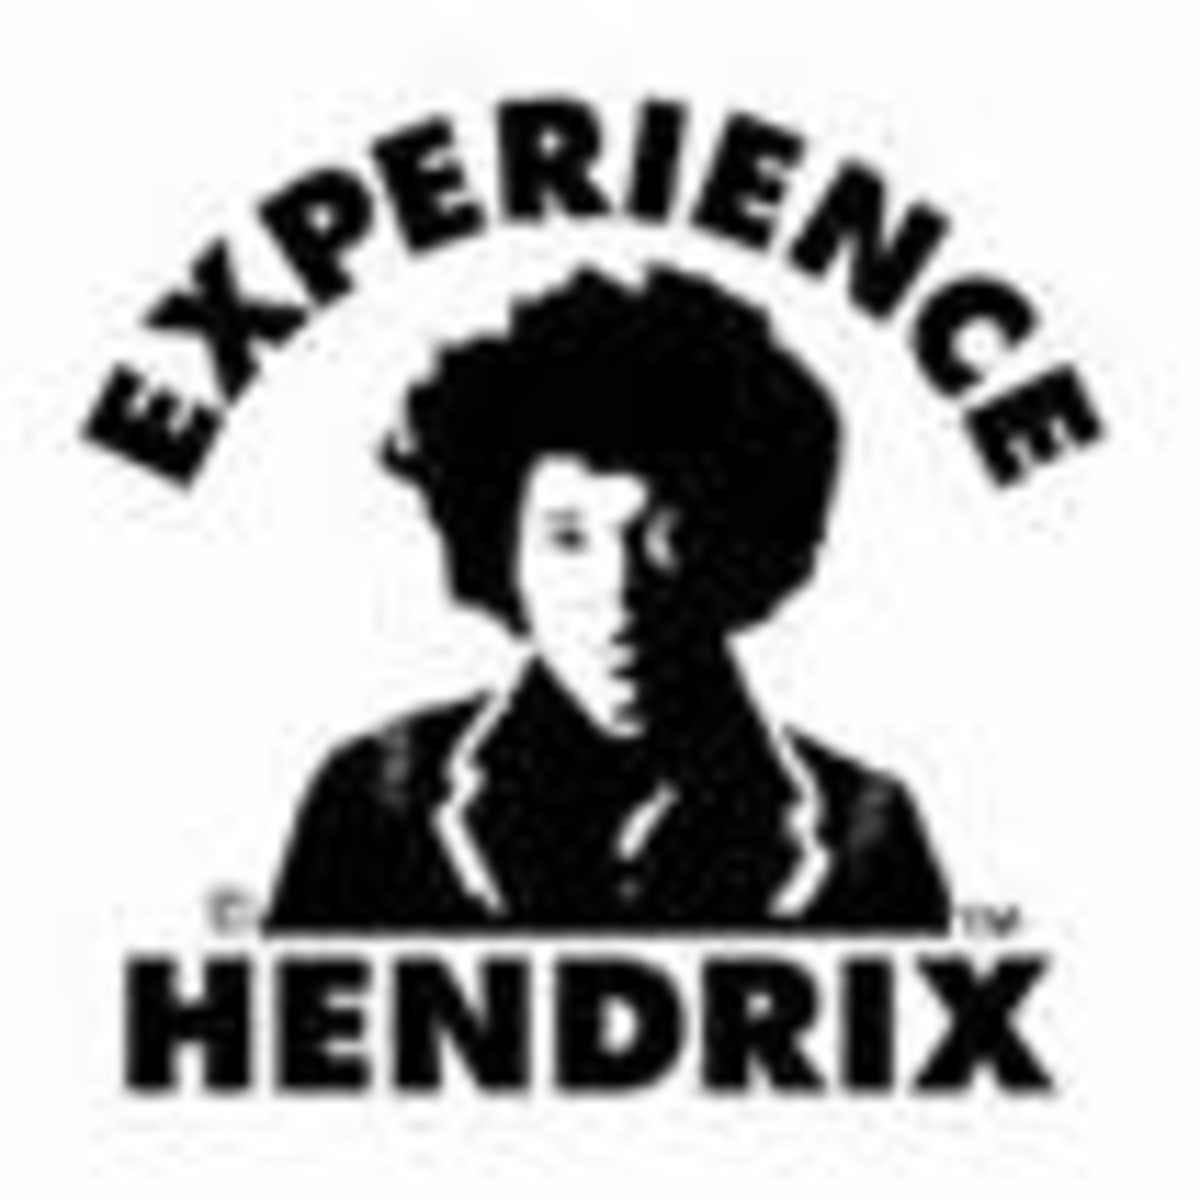 experience_hendrix